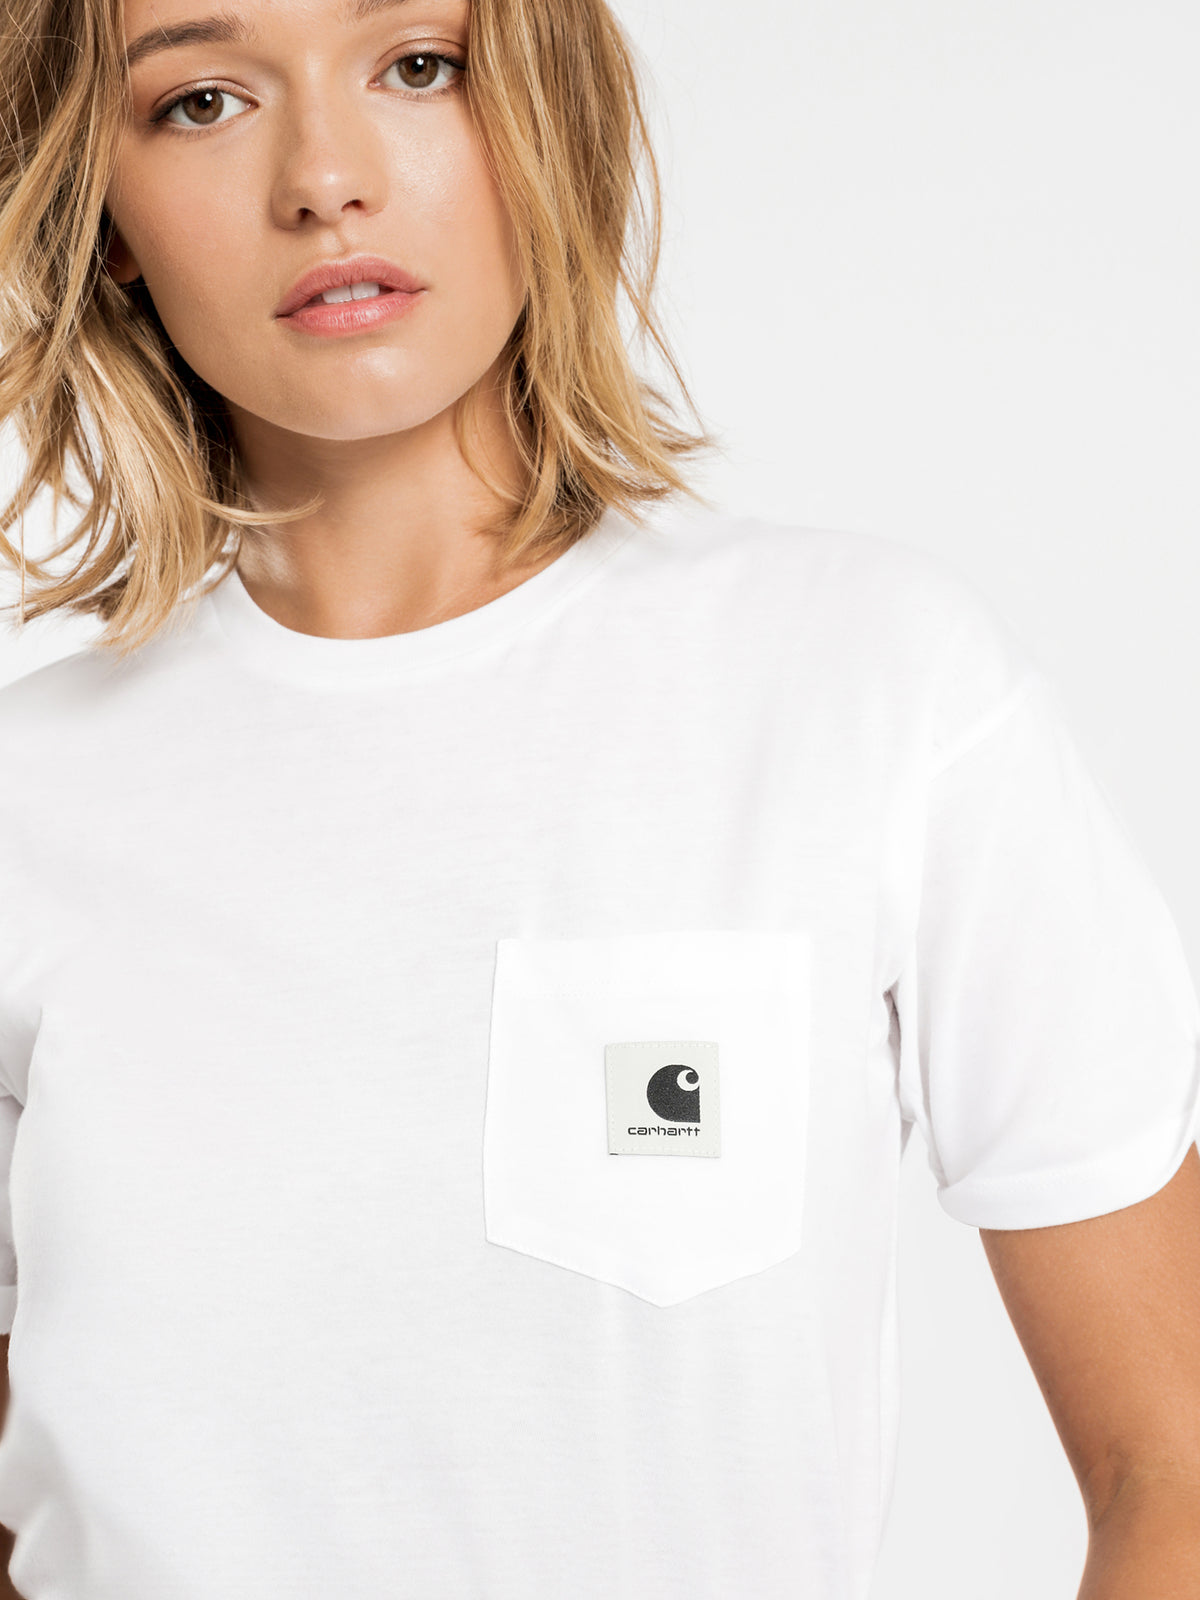 Carrie Short Sleeve Pocket T-Shirt in White